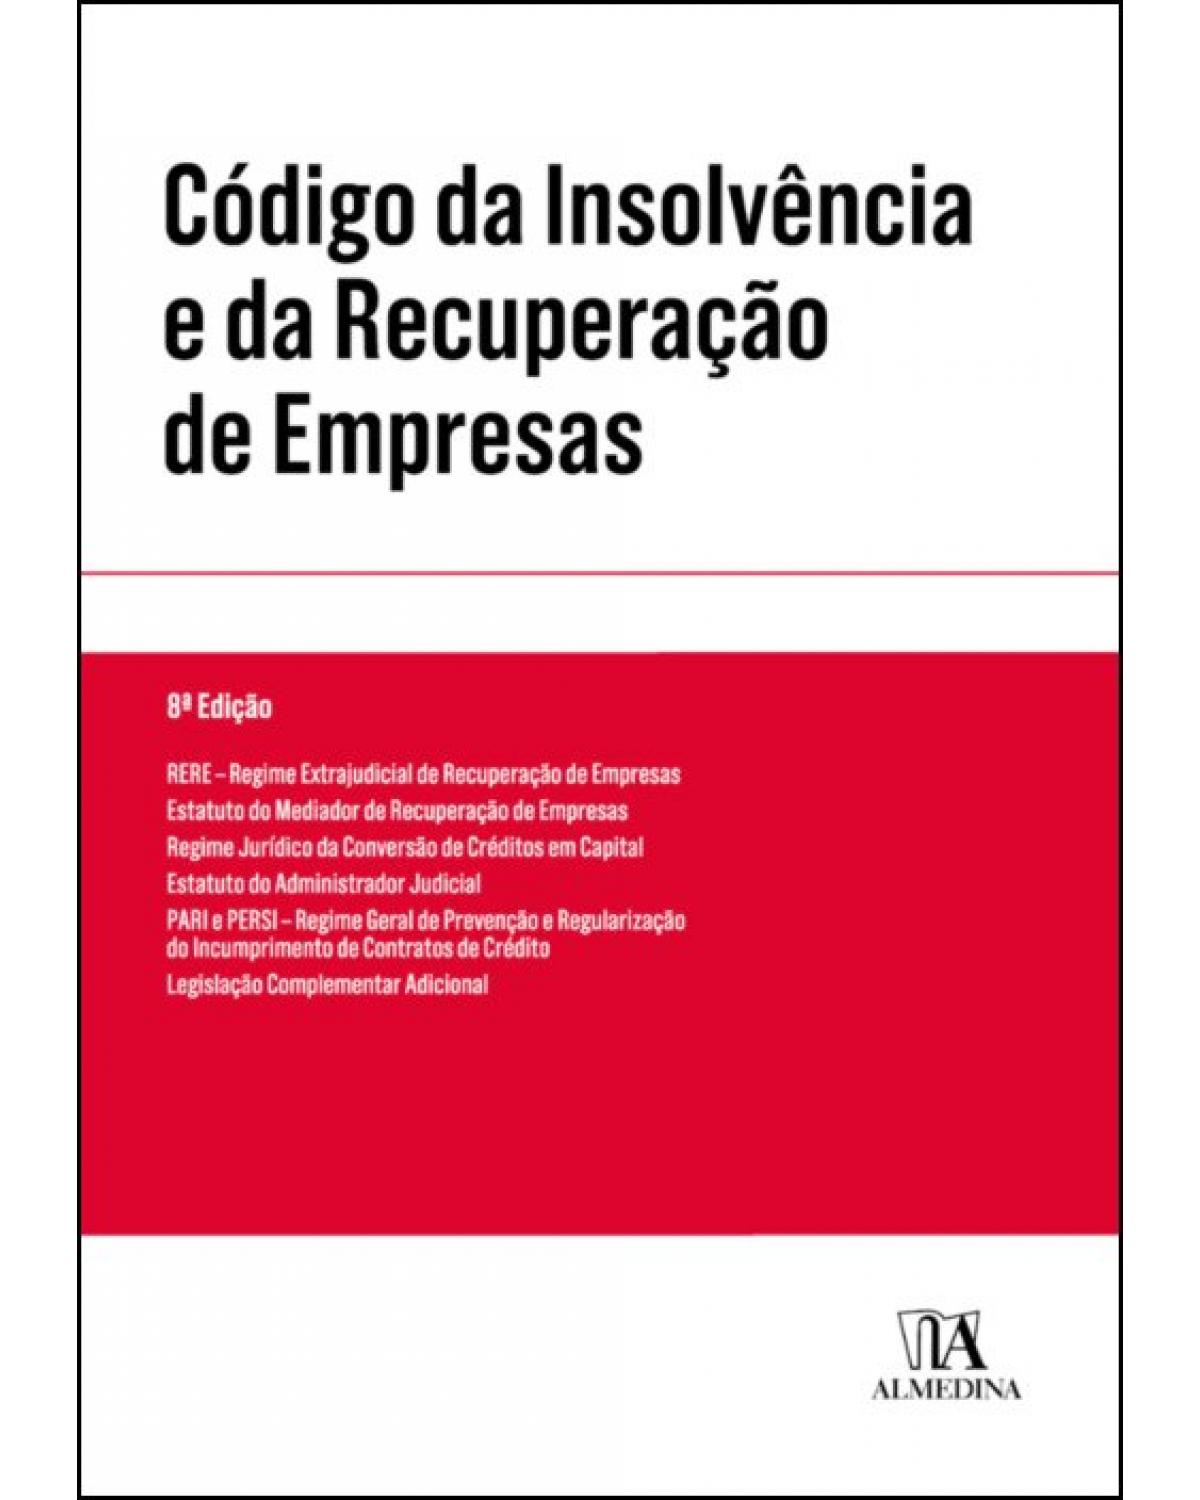 Código da insolvência e da recuperação de empresas - 8ª Edição | 2019